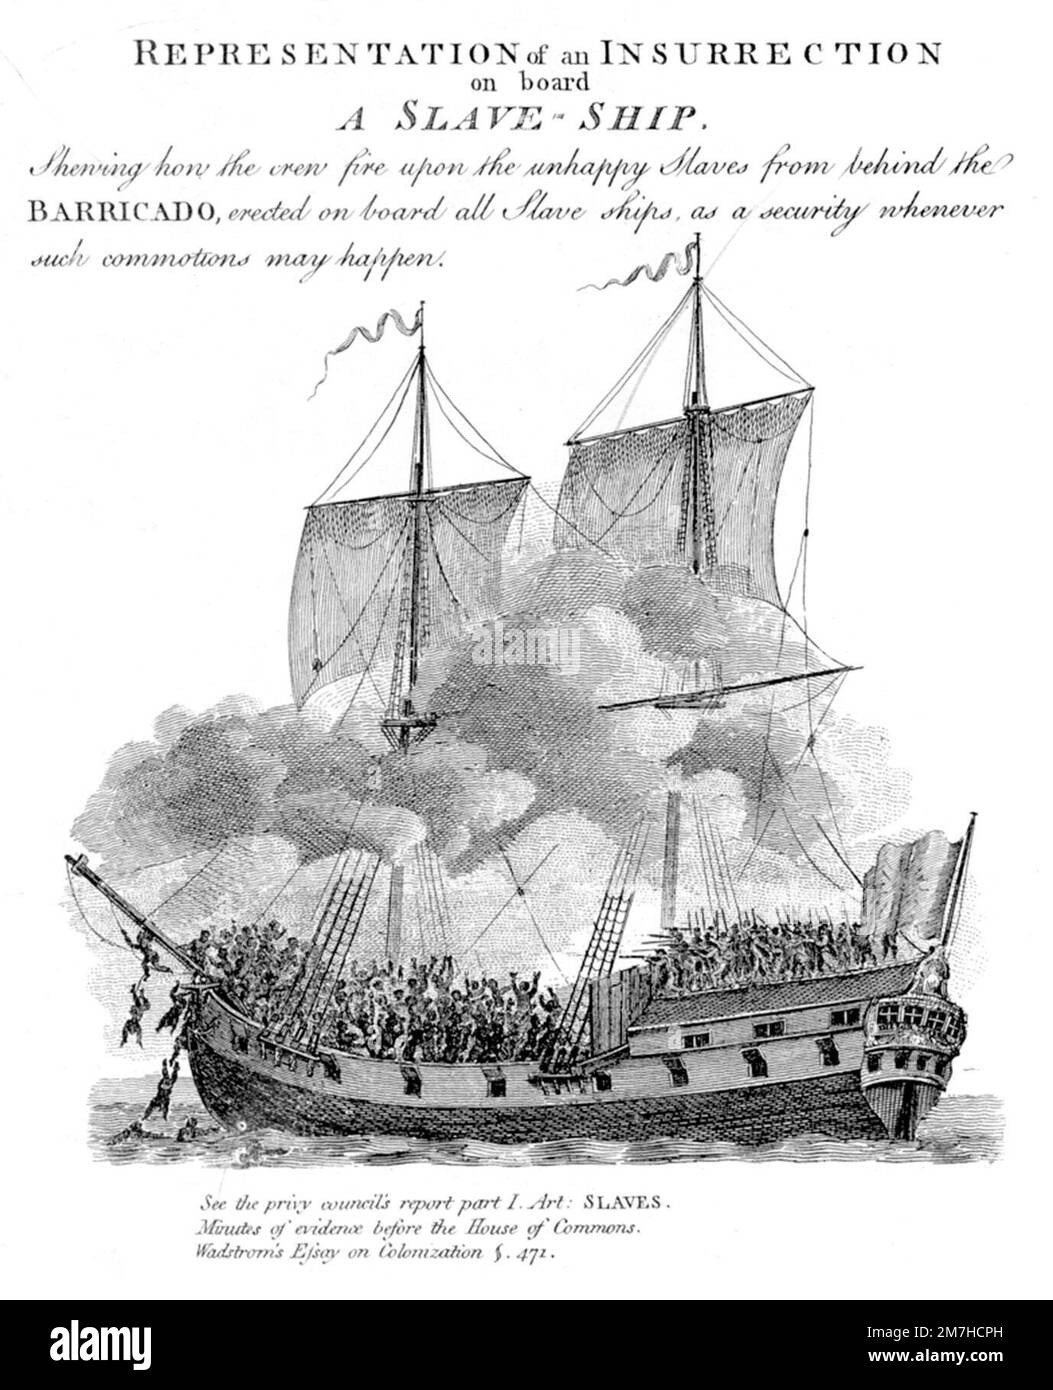 Esta imagen muestra una cubierta superior abarrotada de un barco esclavo con la tripulación del barco disparando armas a los cautivos; algunos africanos bucean por la borda. Foto de stock